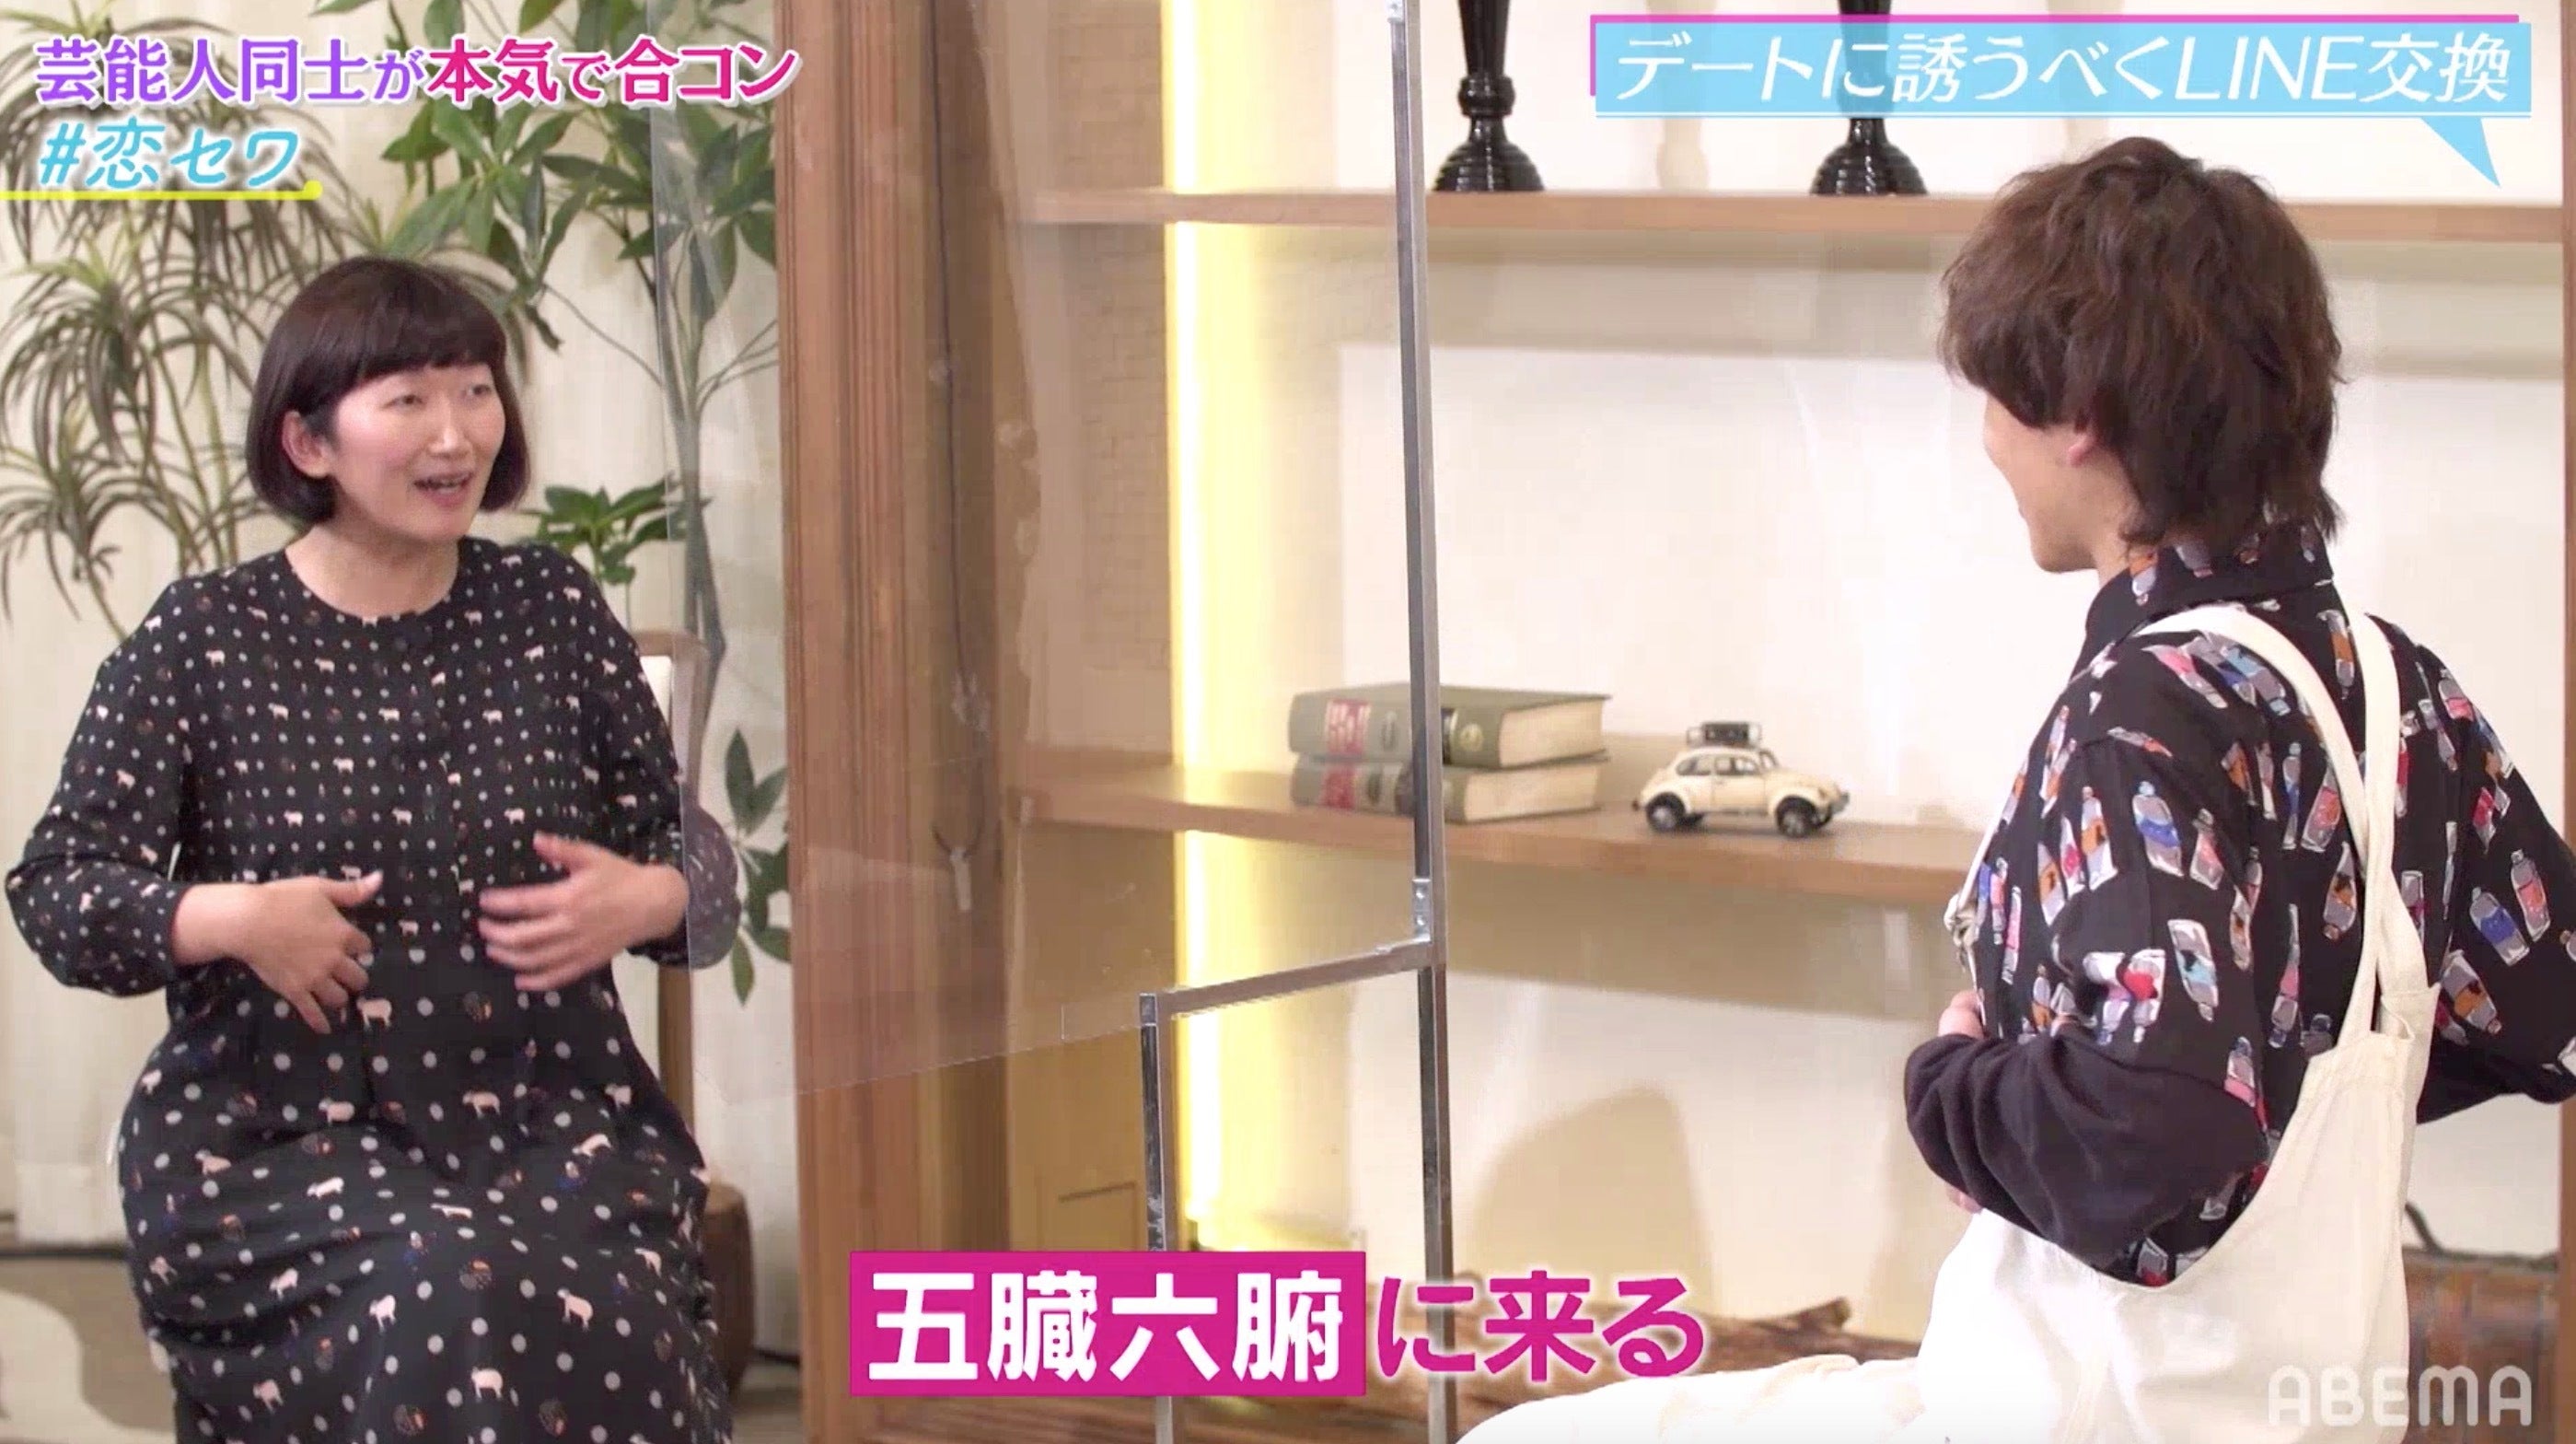 たんぽぽ 川村エミコ 18歳年下のイケメン歌手と合コンでカップル成立 モデルプレス